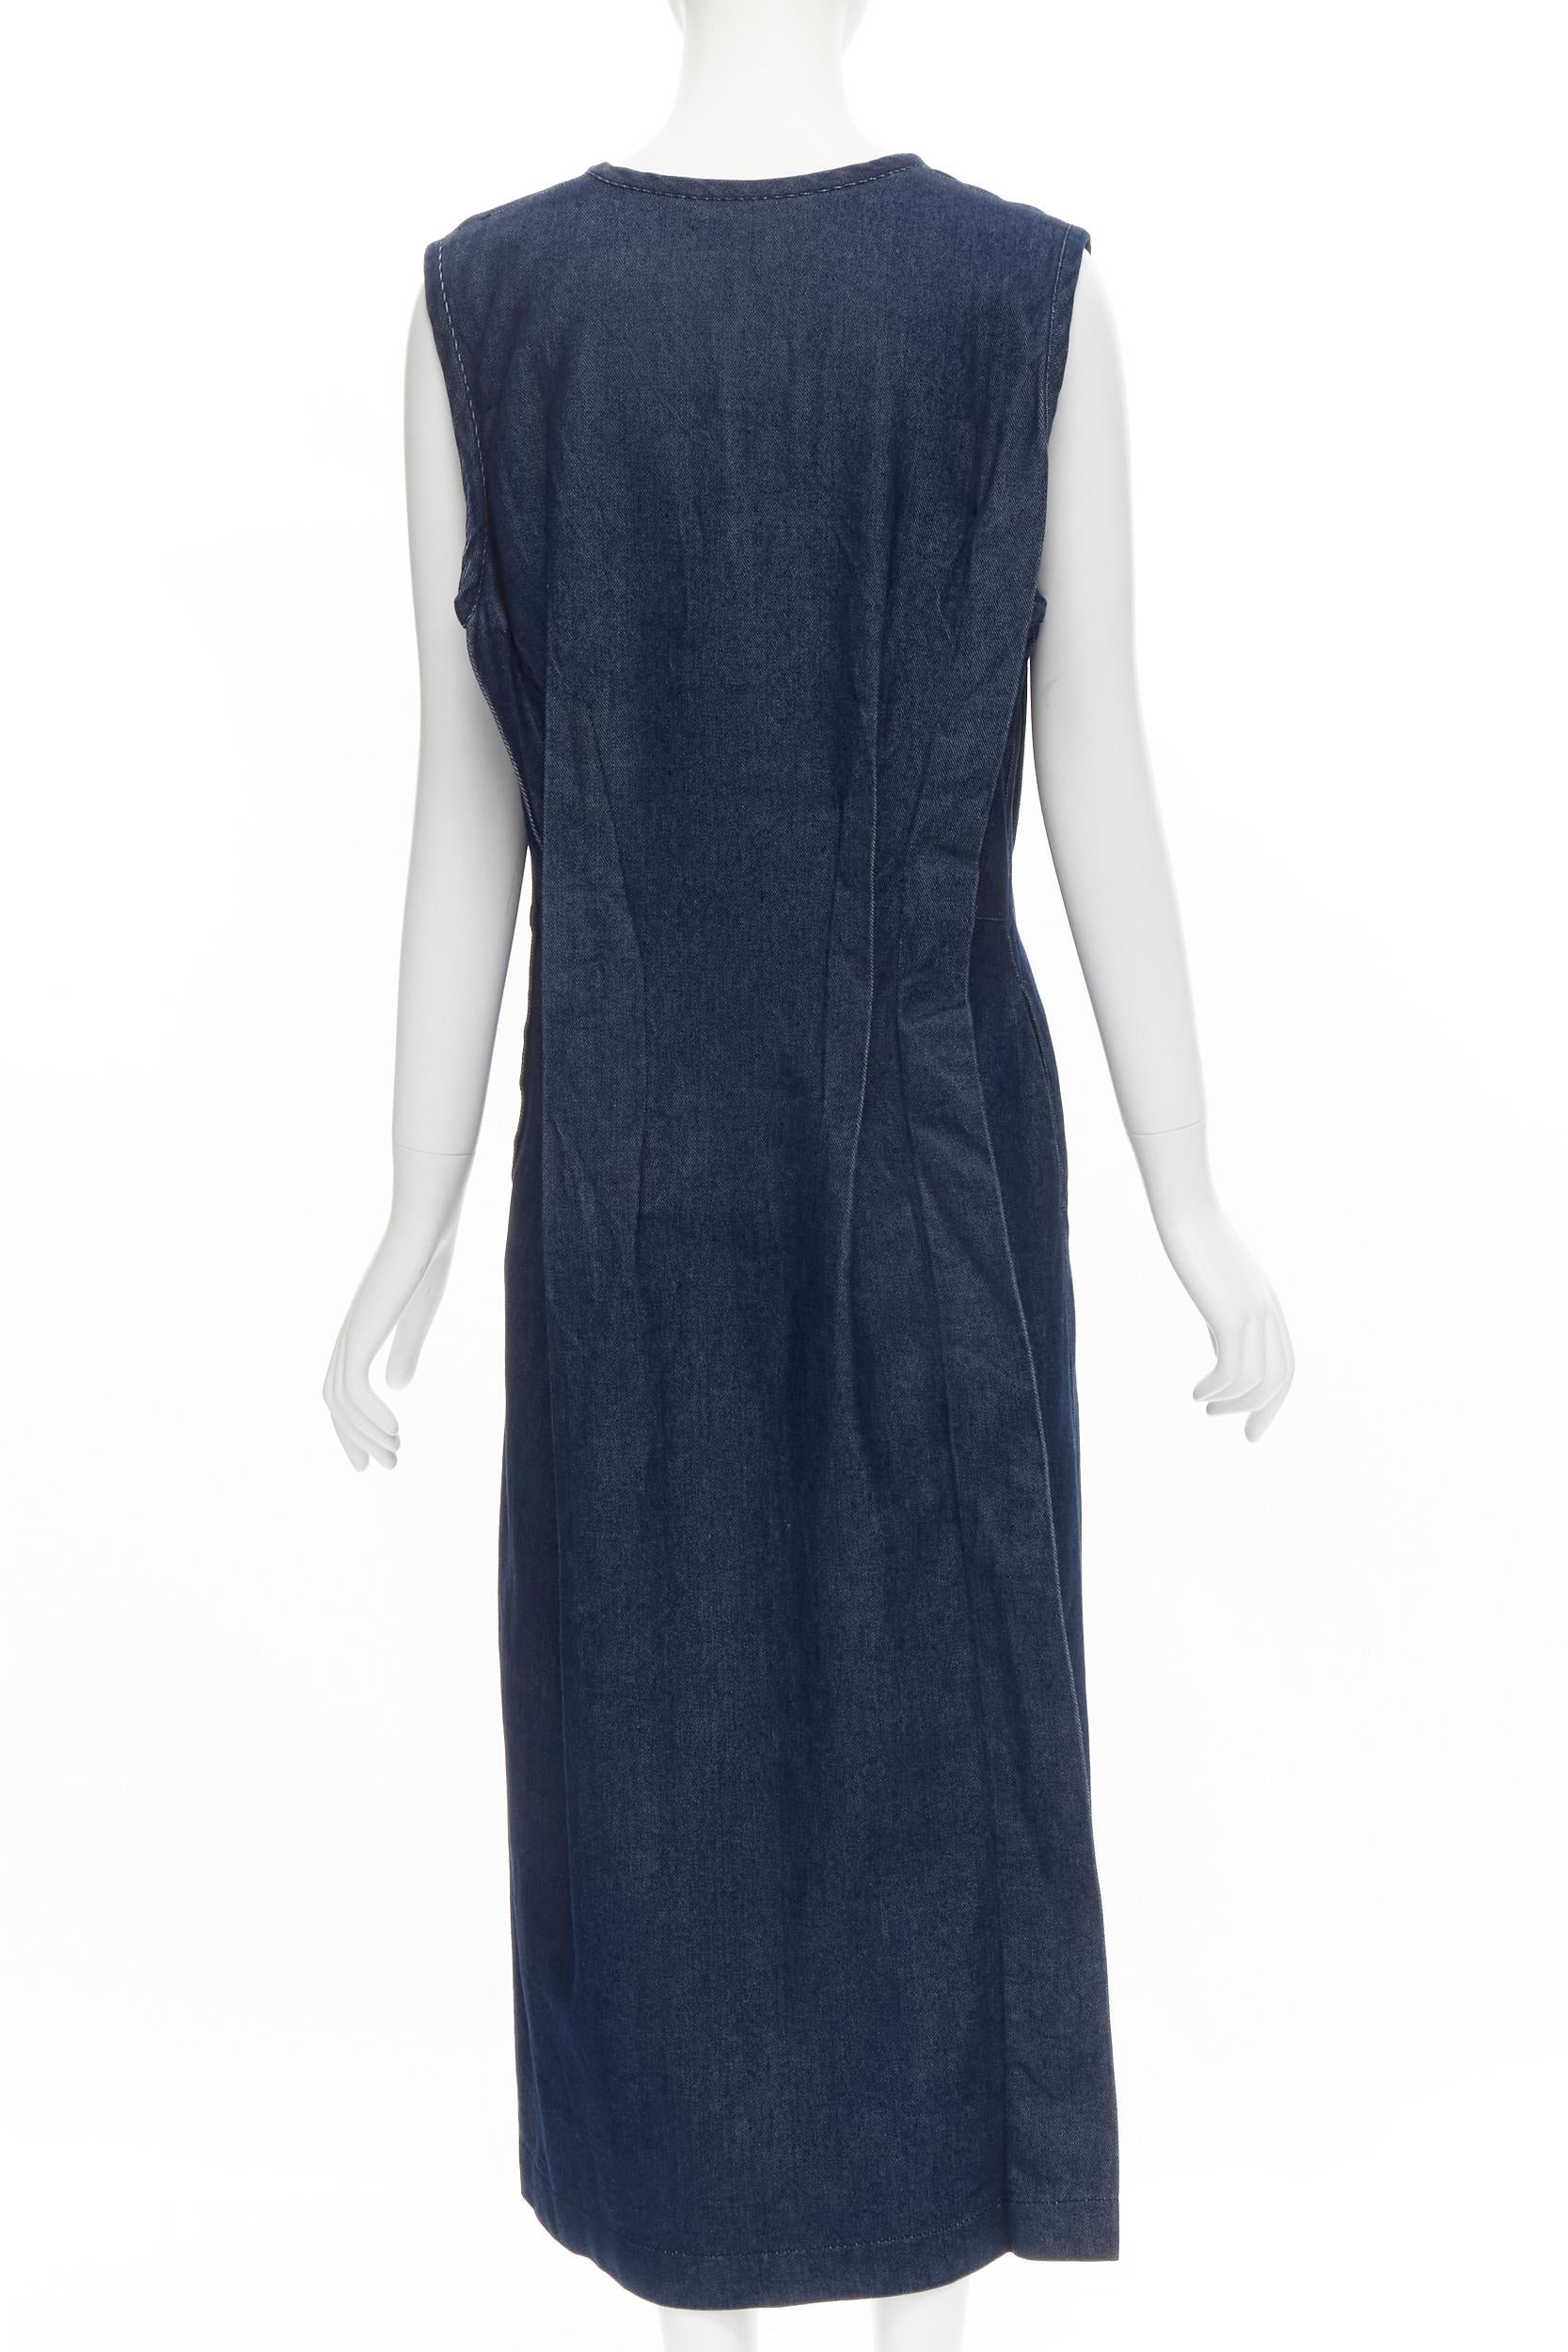 Women's COMME DES GARCONS Vintage 1991 indigo blue denim pinched seam dress M For Sale